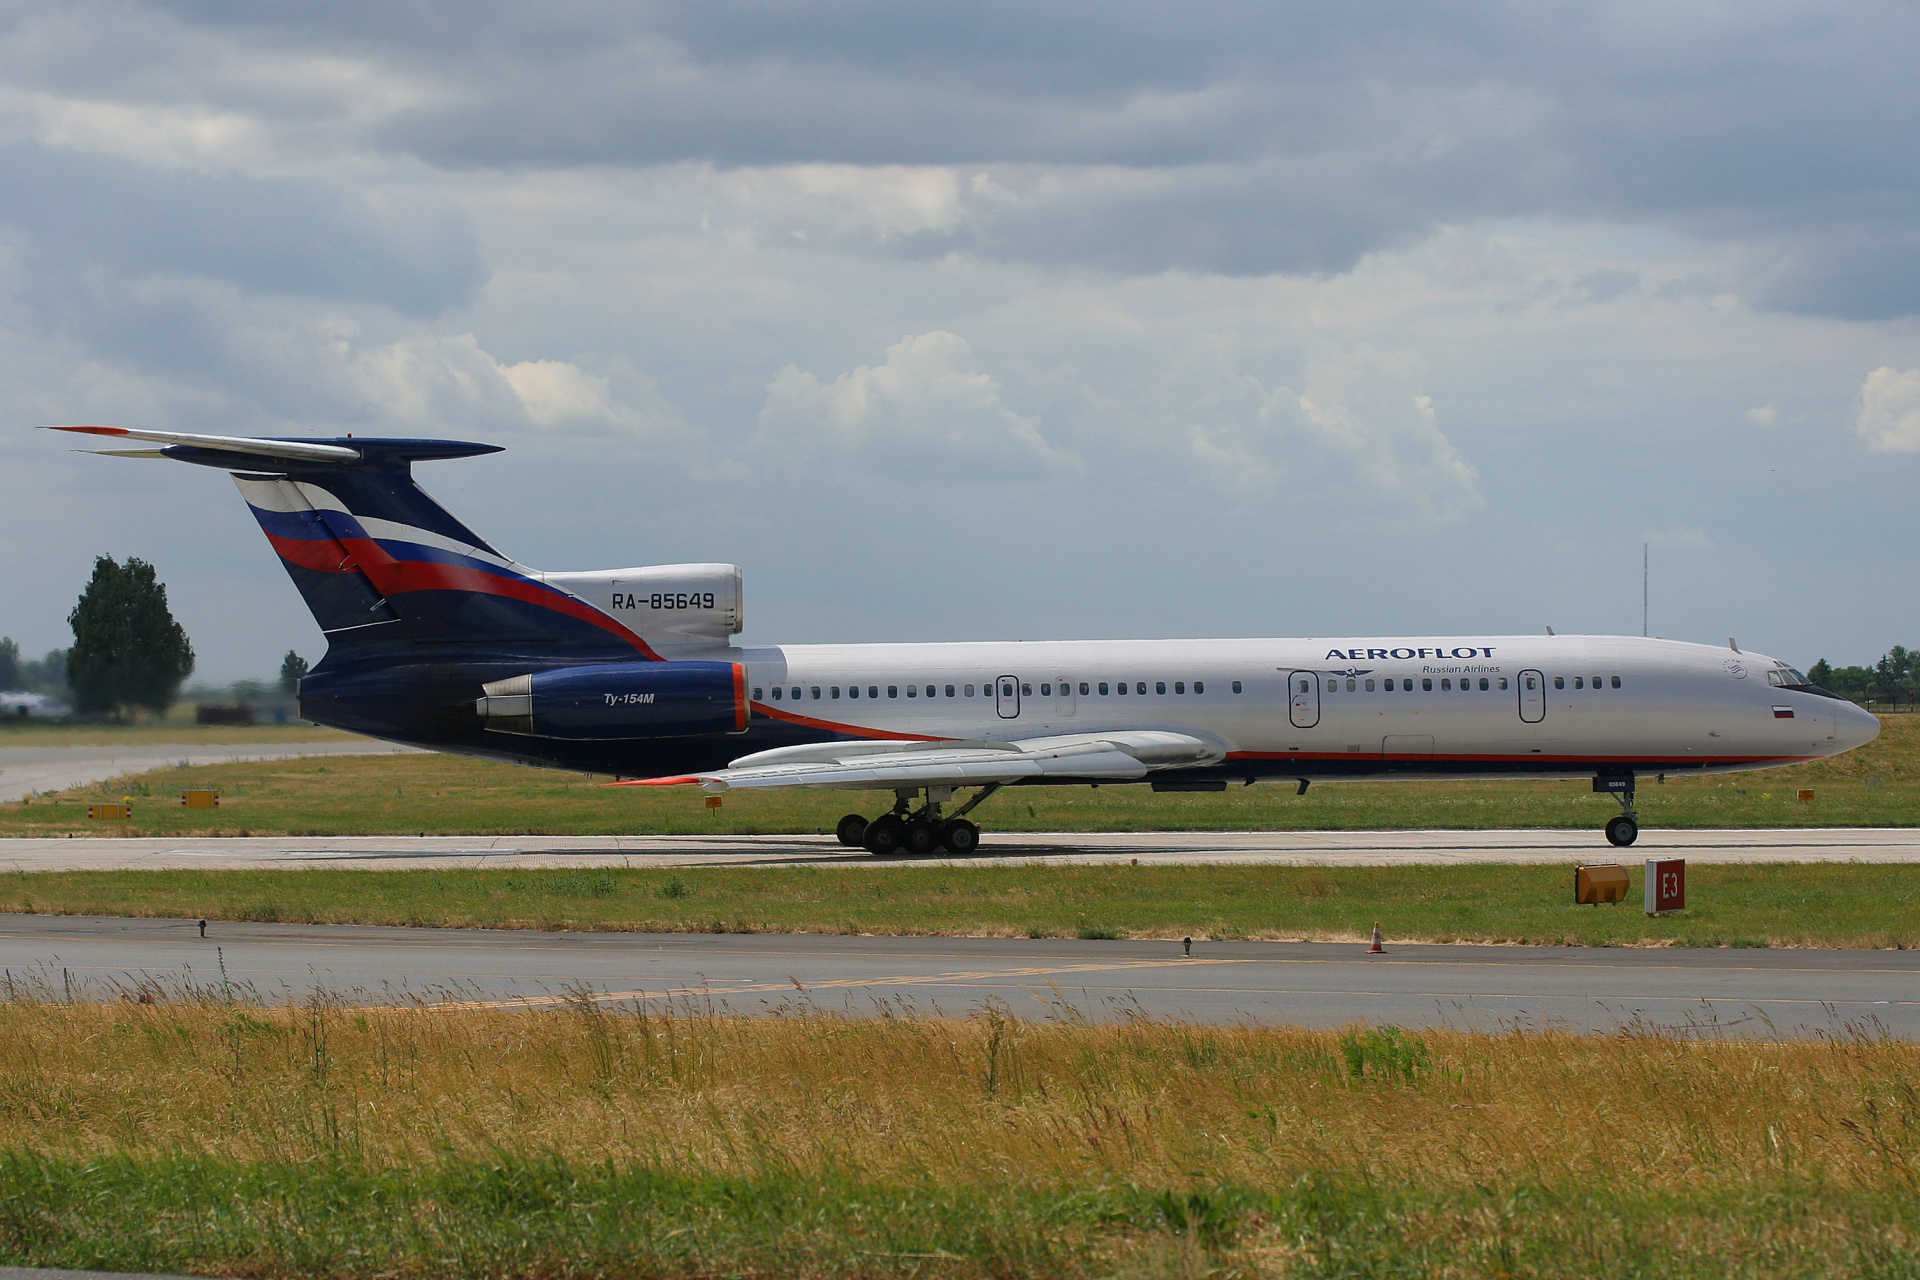 RA-85649 (Aircraft » EPWA Spotting » Tupolev Tu-154M » Aeroflot Russian Airlines)